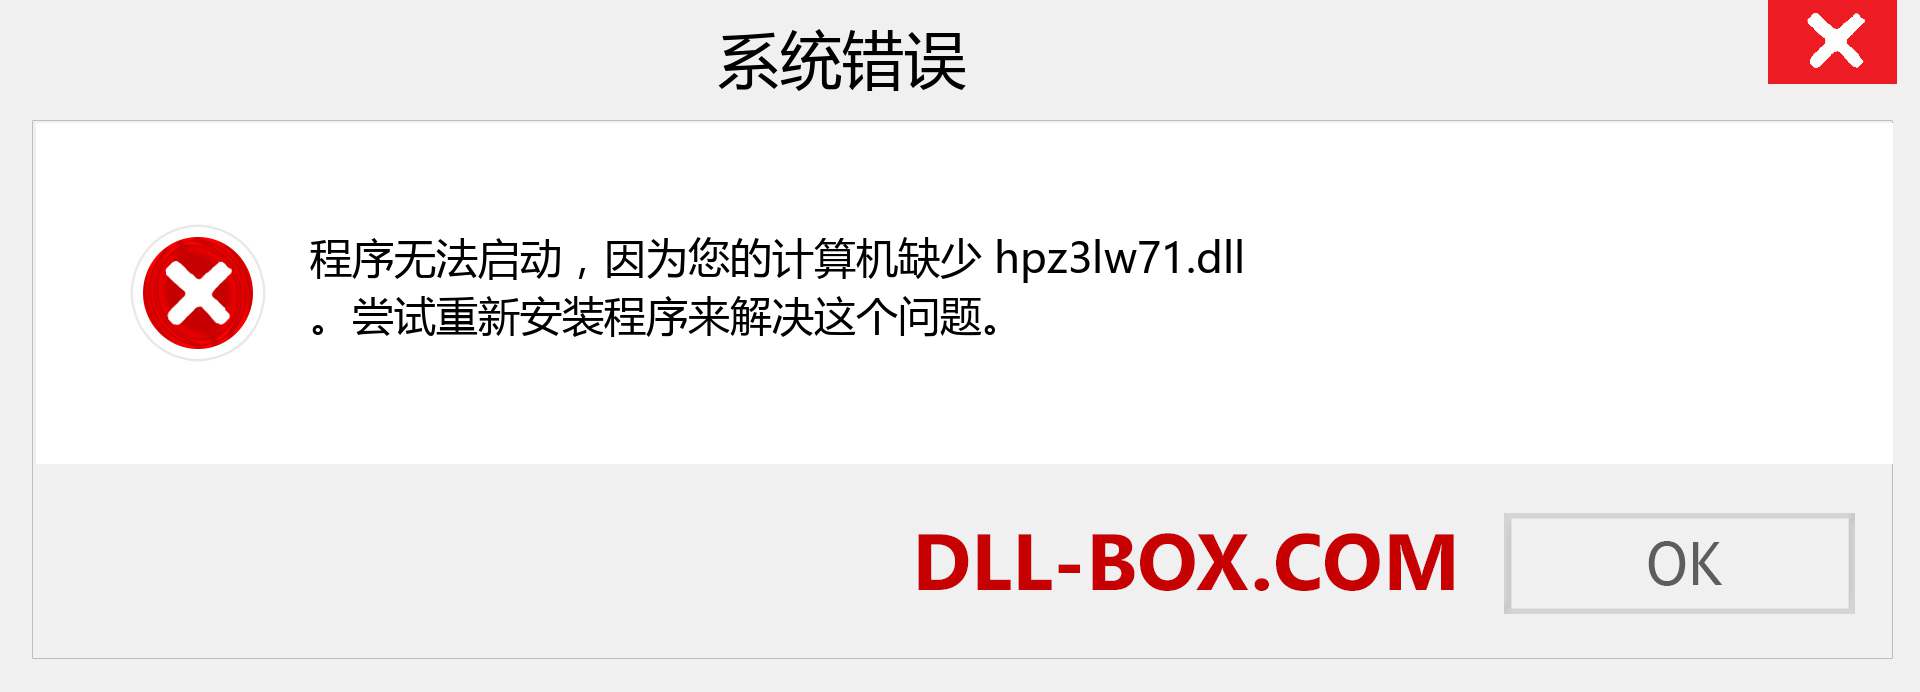 hpz3lw71.dll 文件丢失？。 适用于 Windows 7、8、10 的下载 - 修复 Windows、照片、图像上的 hpz3lw71 dll 丢失错误